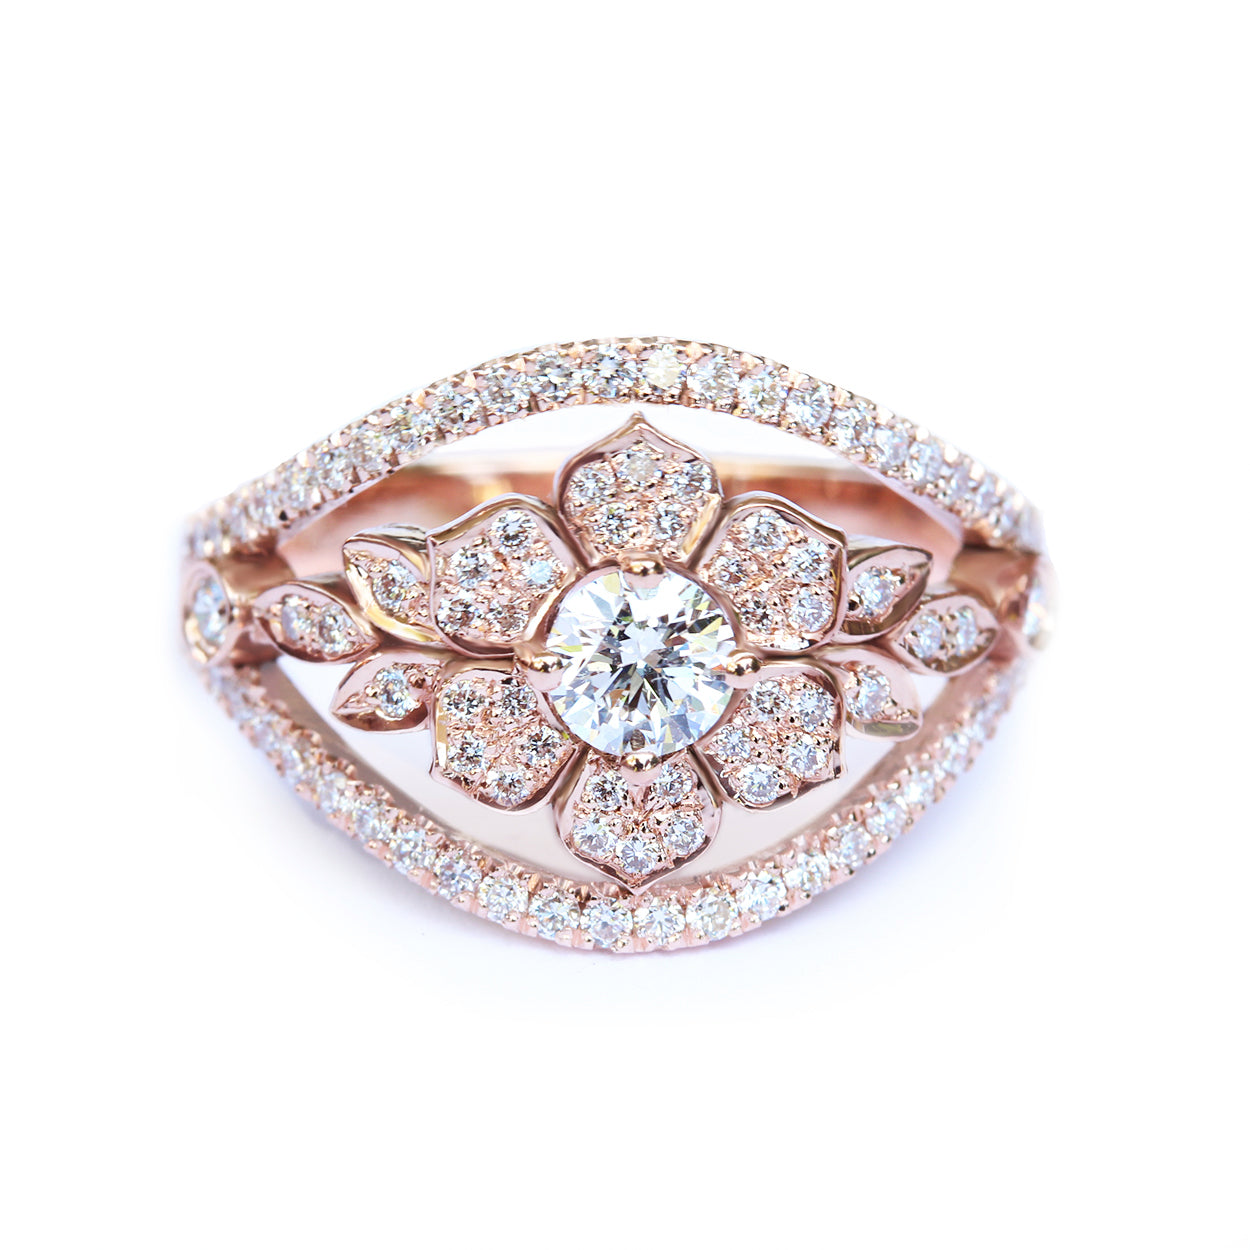 OOAK Lilly Flower Garden Diamond Ring, 14K Rose Gold, Ring Size 7